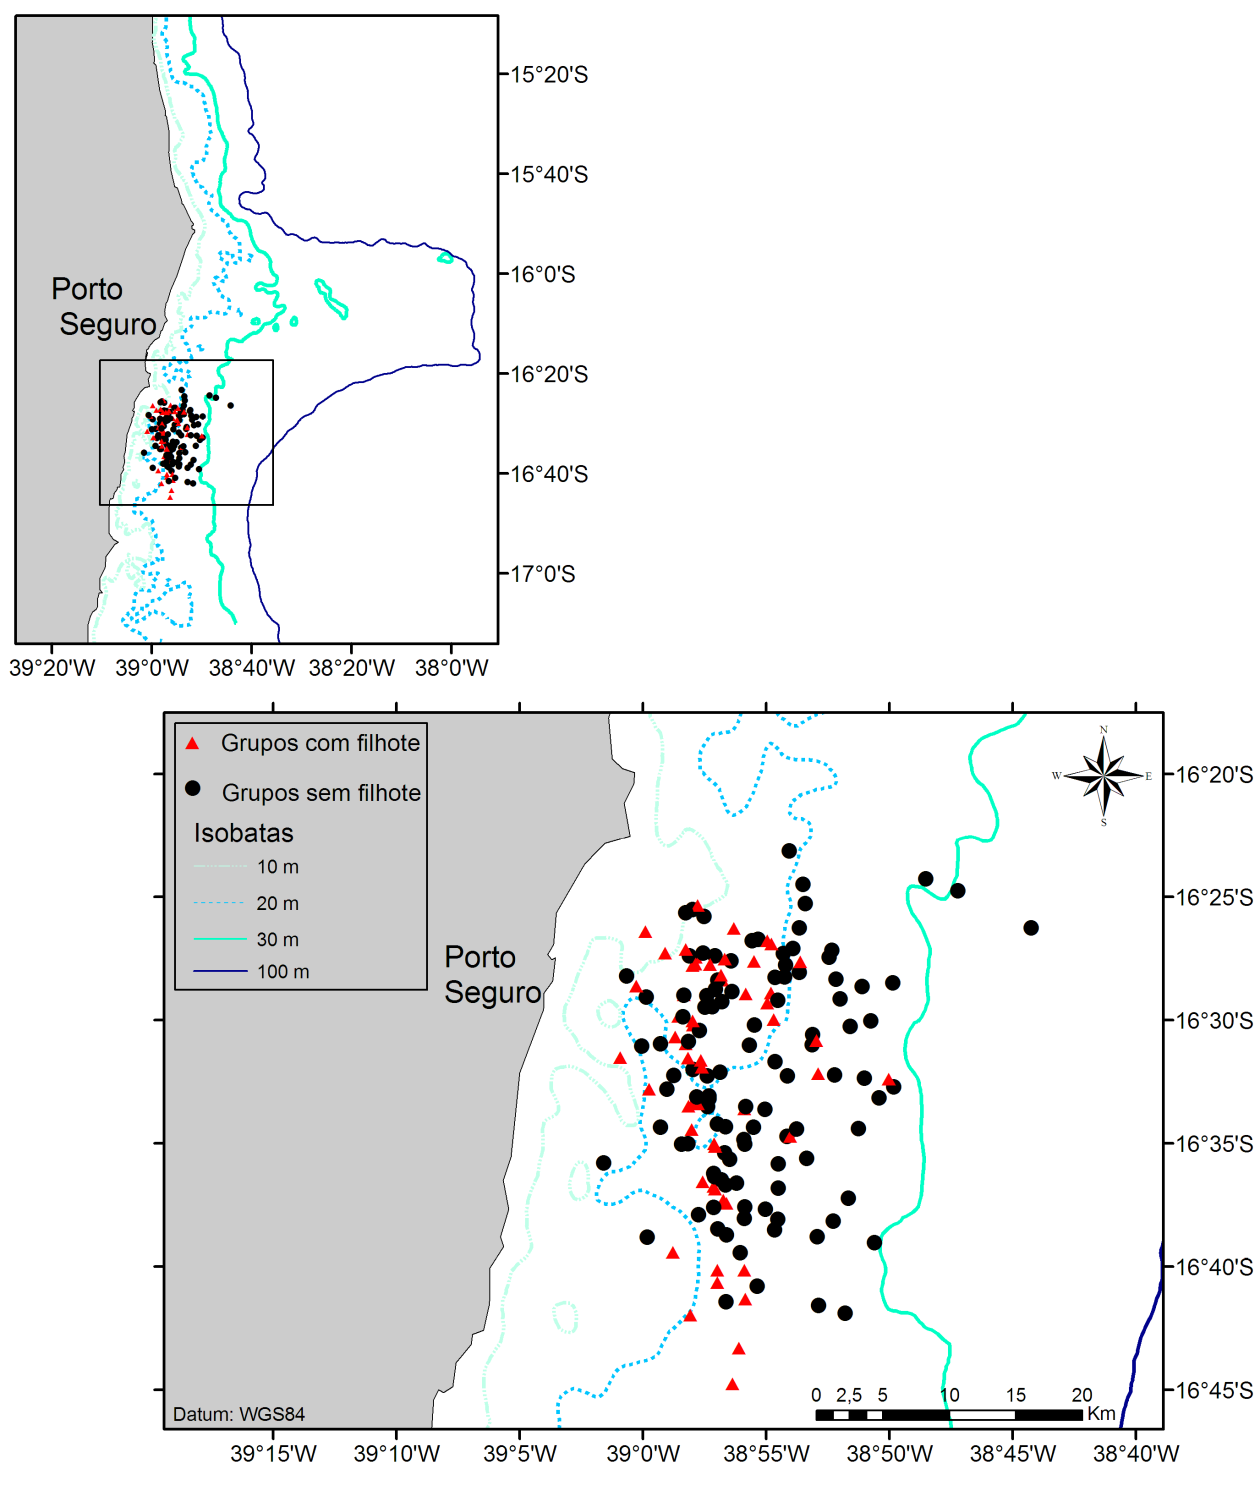 Figura 2: Mapa com pontos de observação dos grupos de baleias registrados, triângulos vermelhos representando